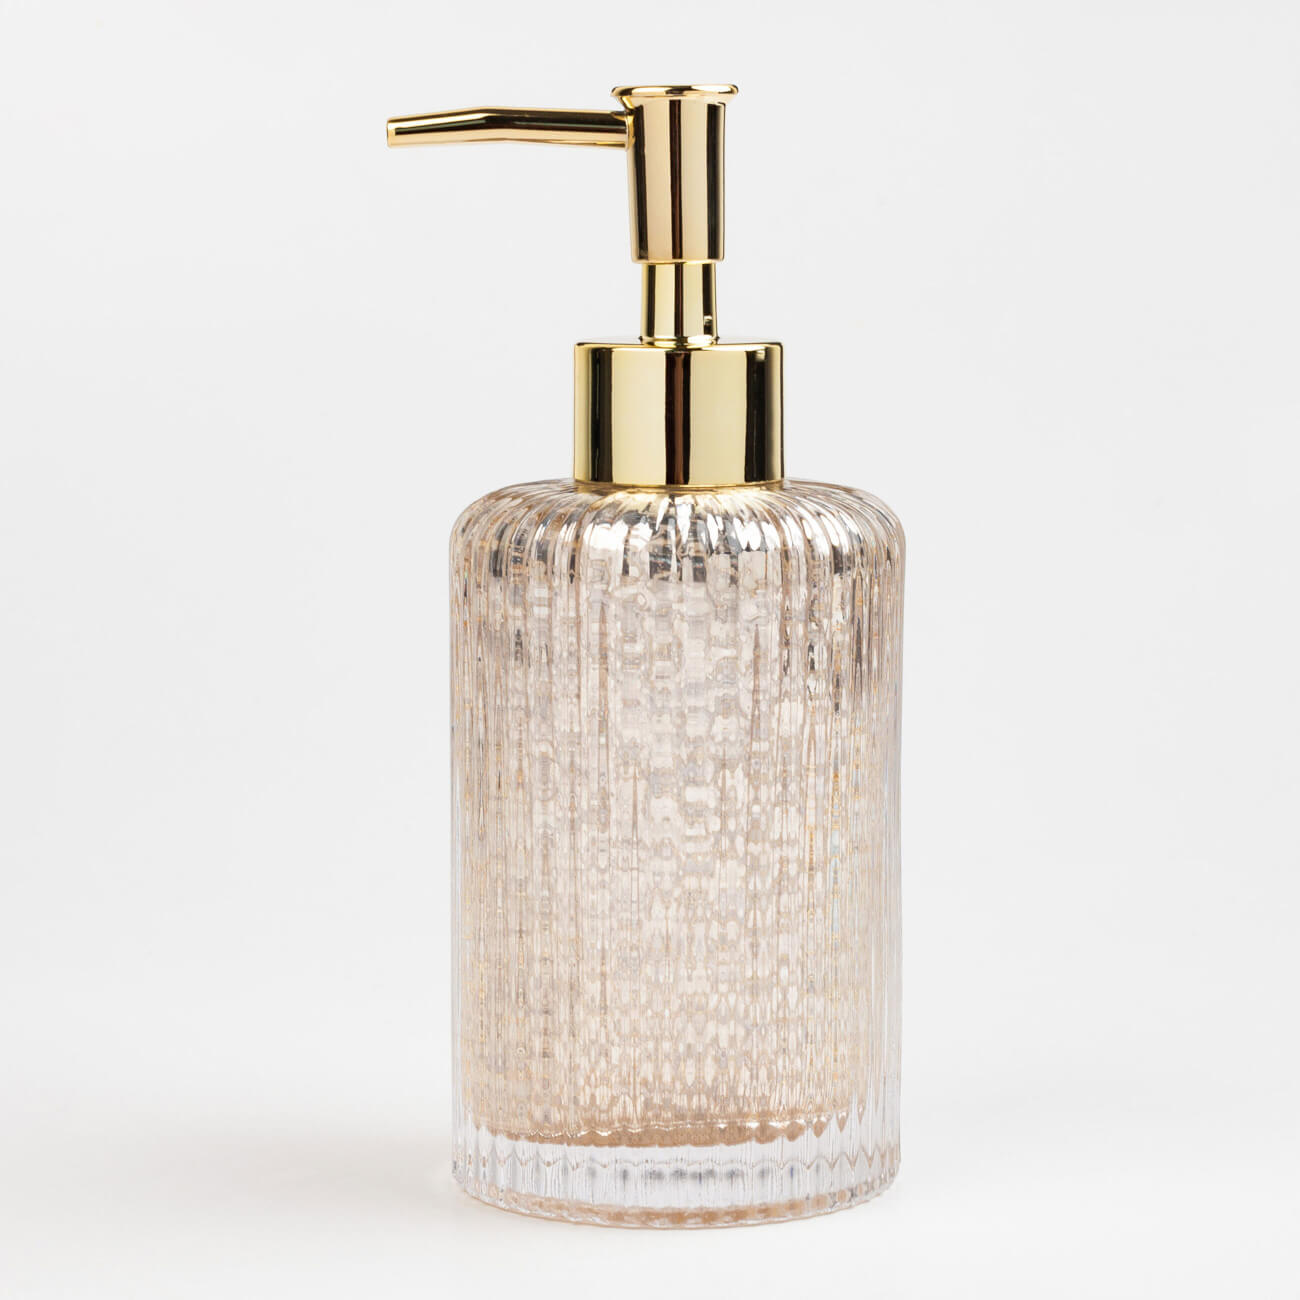 Liquid soap dispenser, 240 ml, glass / plastic, golden, Diana изображение № 1